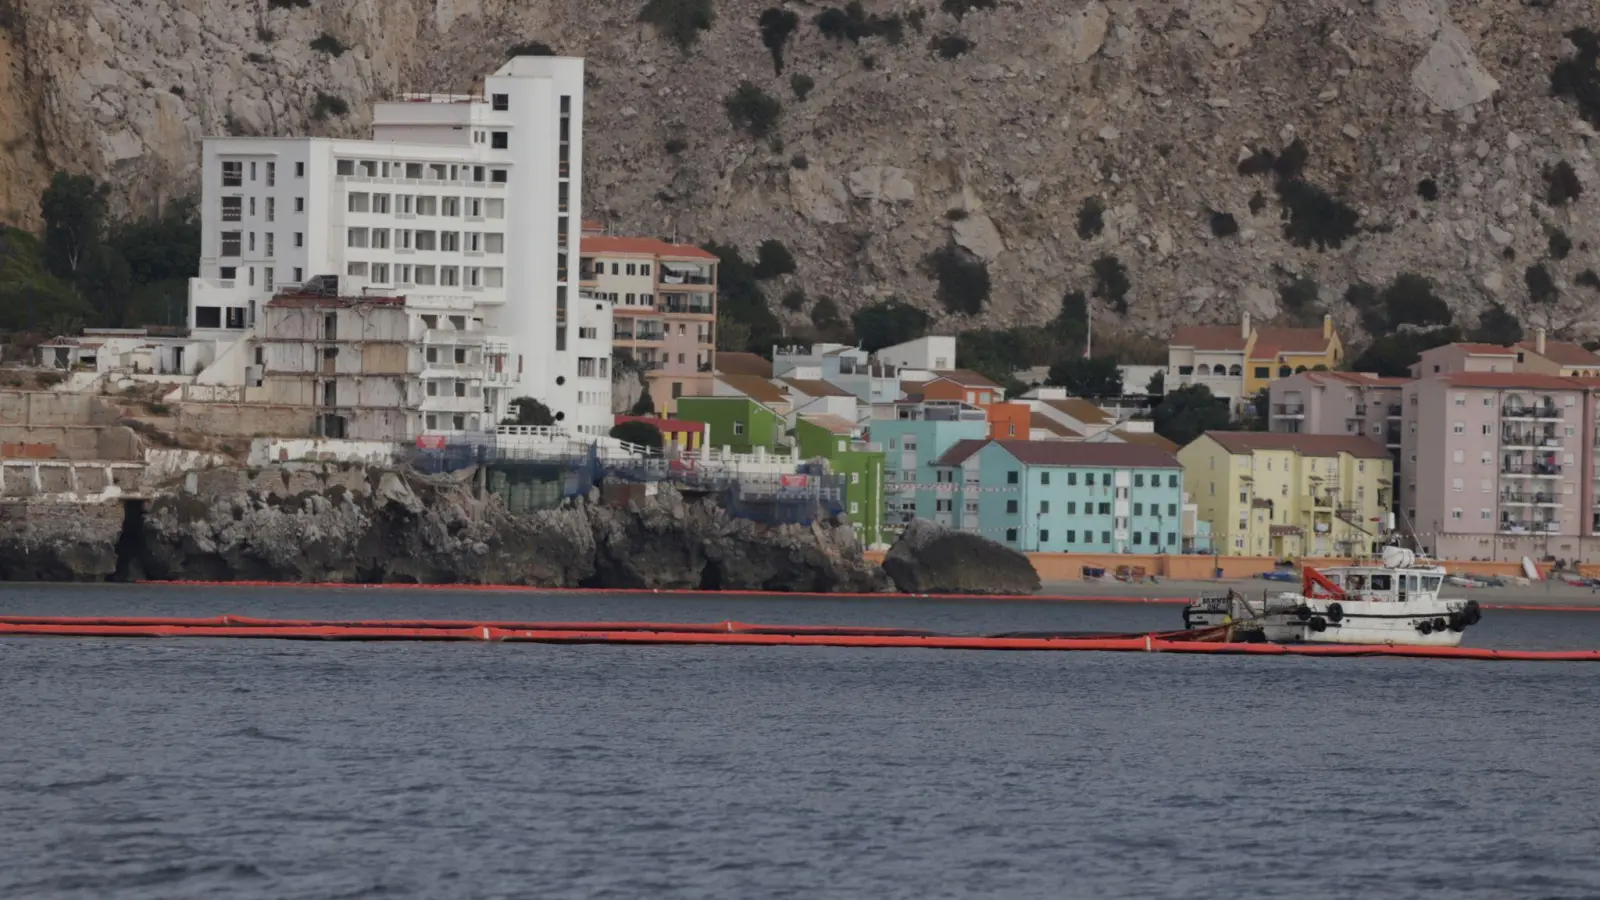 Eine schwimmende Barriere wurde eingesetzt, um den Ölteppich in der Nähe des Frachters einzudämmen. (Foto: Nono Rico/EUROPA PRESS/dpa)